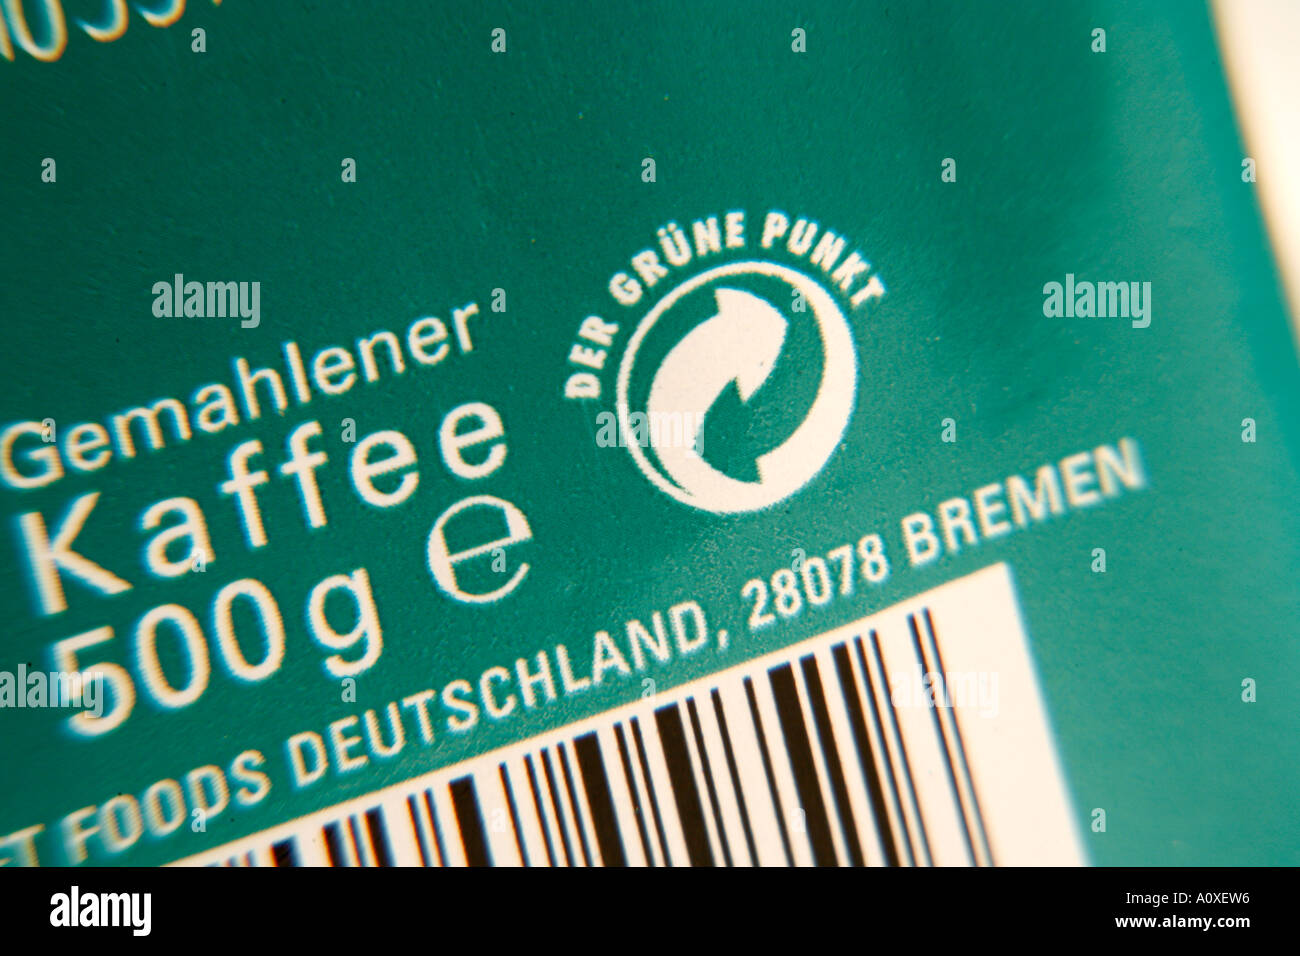 Der Grune Punkt Symbol auf Paket Deutsch Kaffee Stockfotografie - Alamy